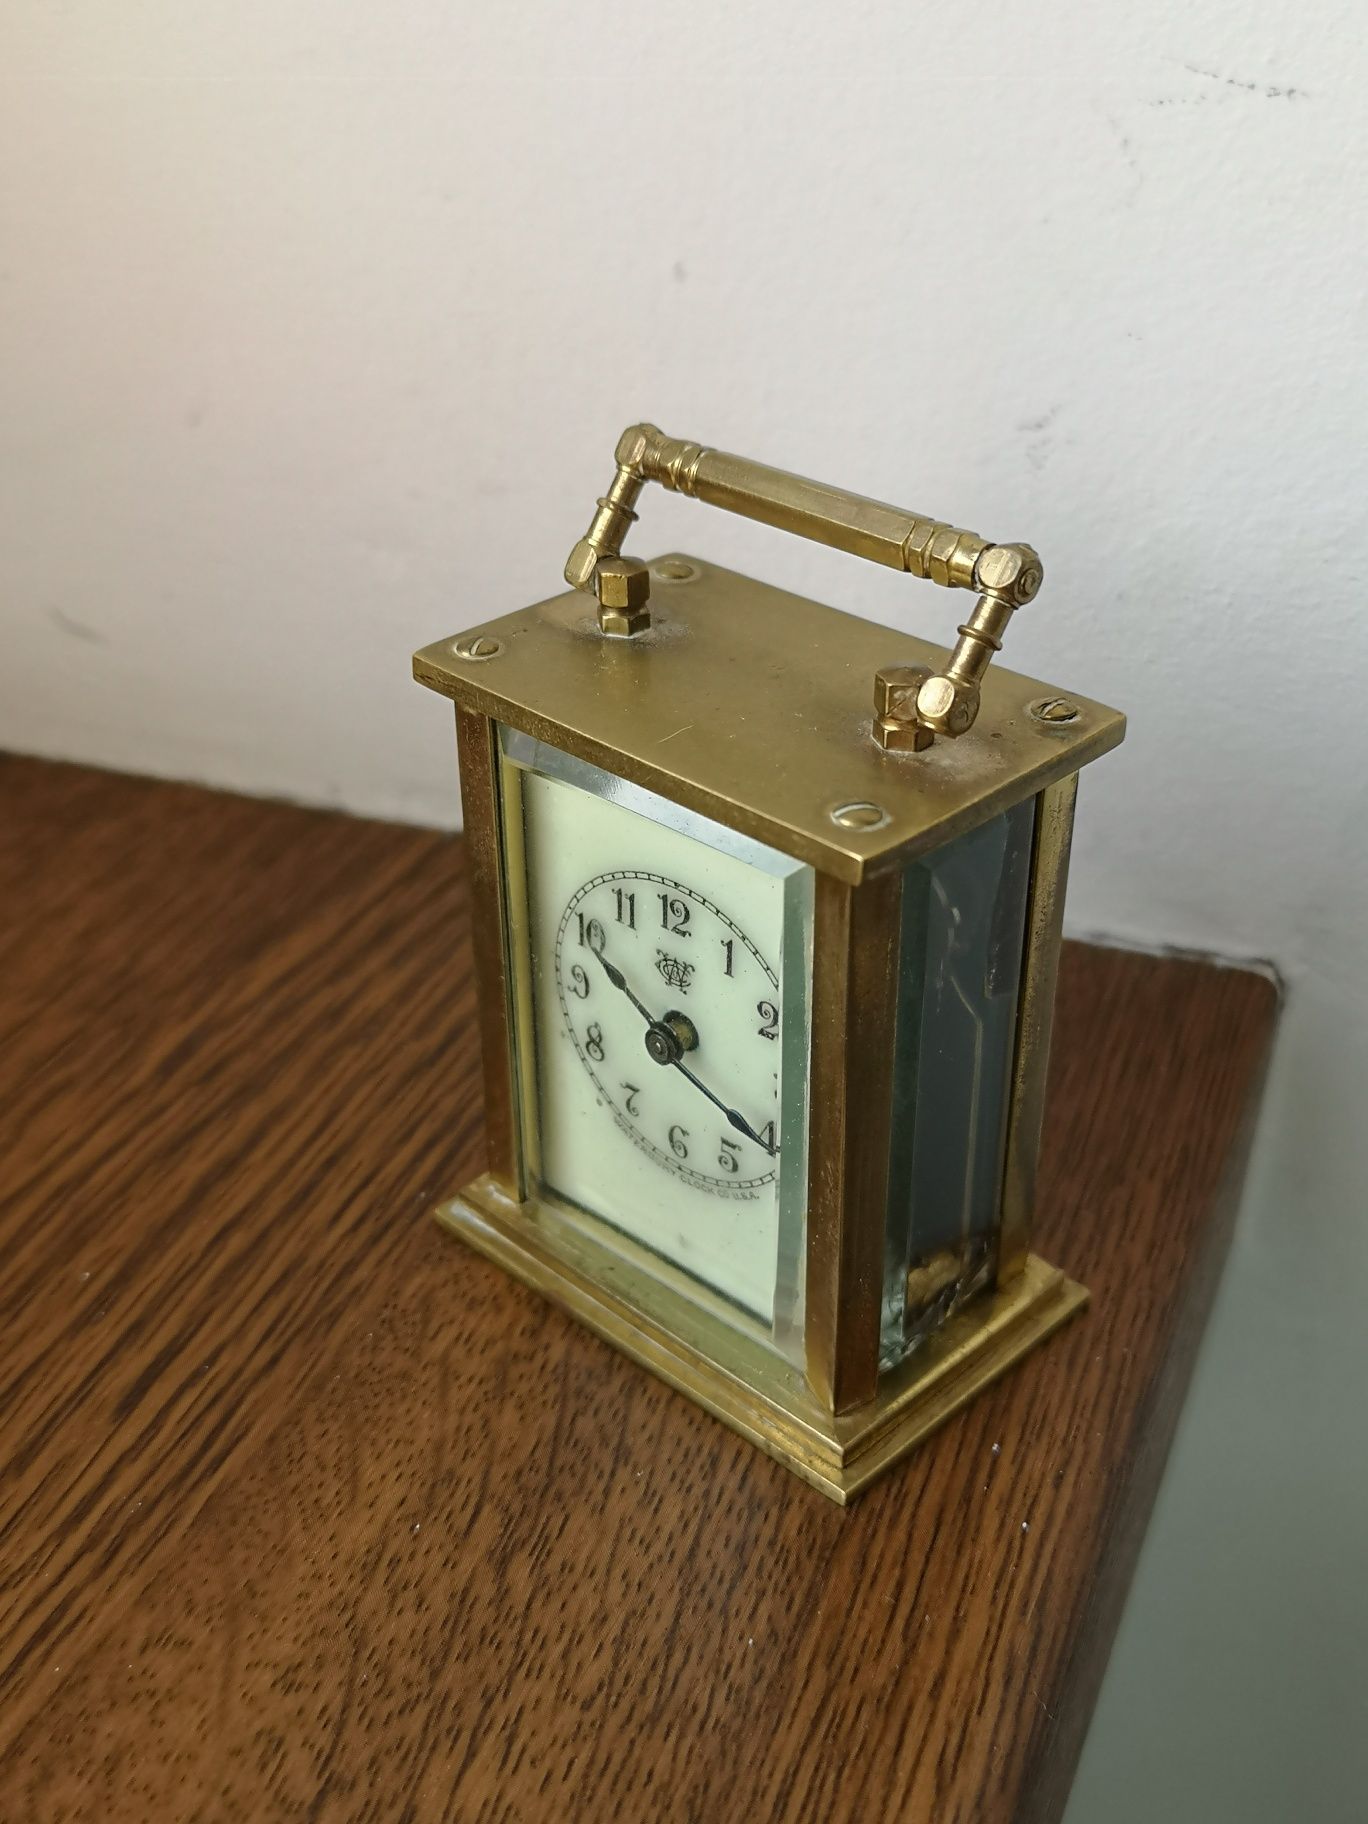 miniaturowy zegar podróżny kareciak Waterbury około 1900 rok